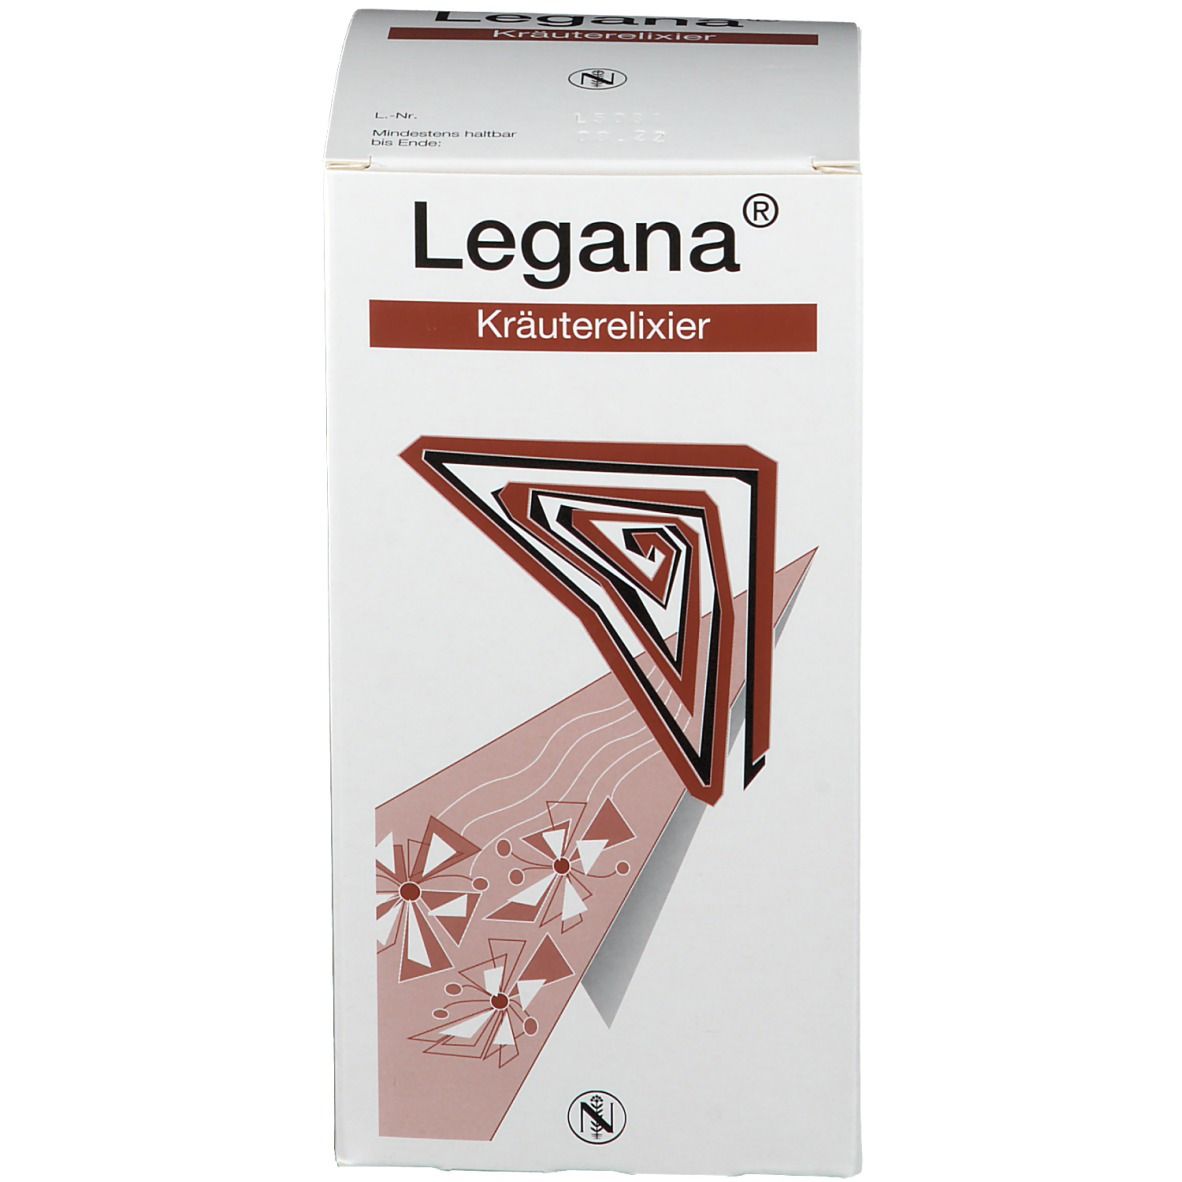 Legana® Kräuterelixier